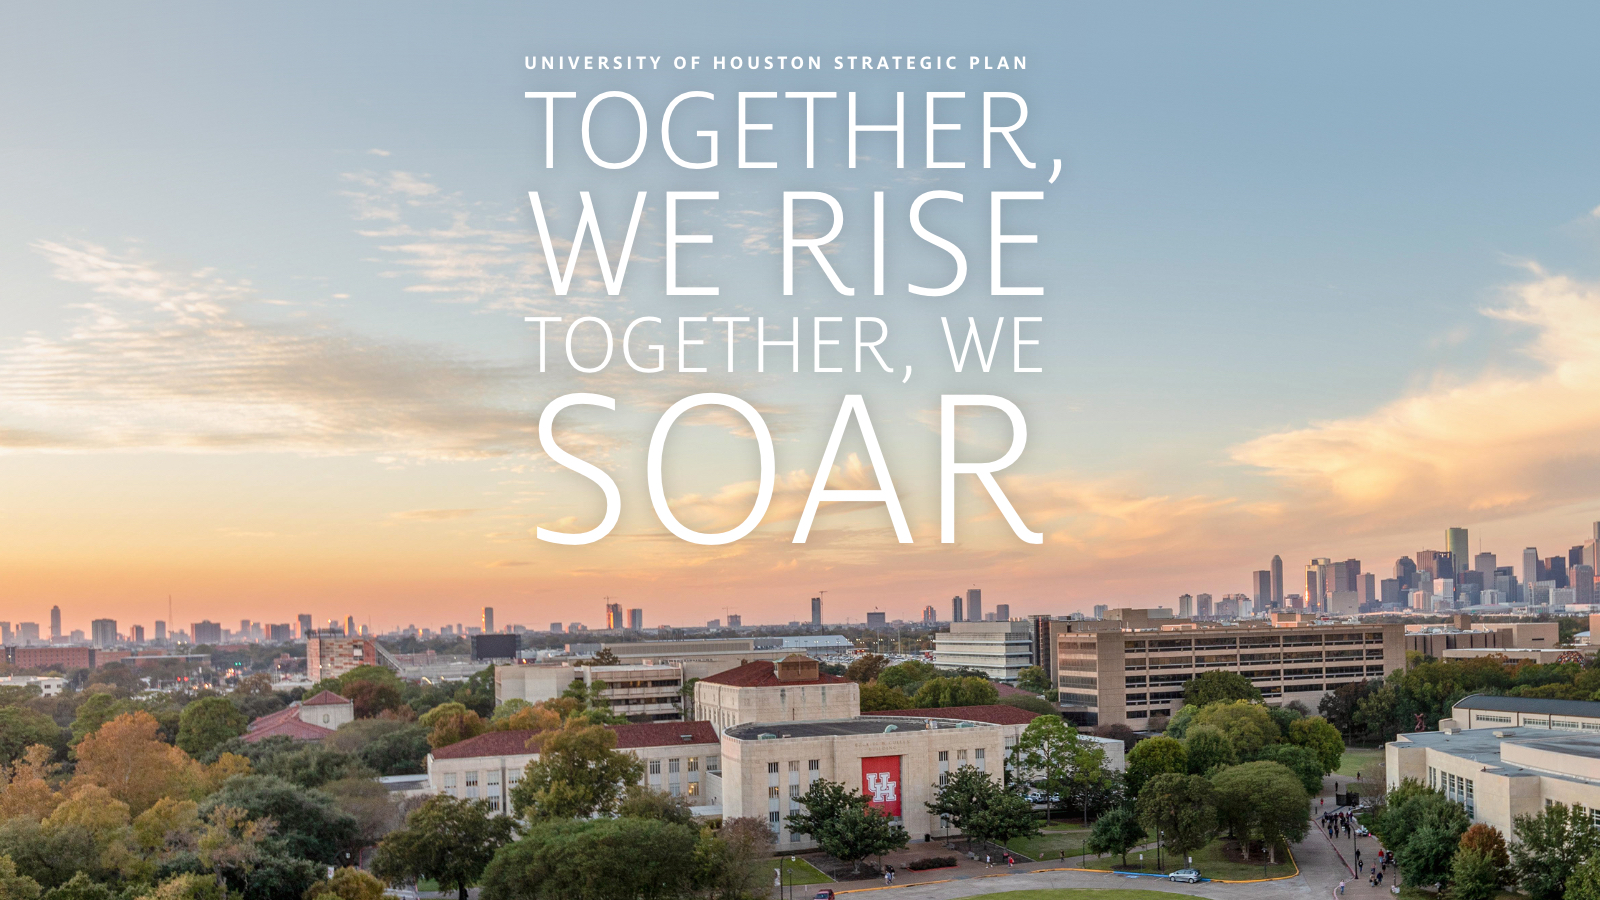 UH Strategic Plan - Together We Rise, Together We Soar